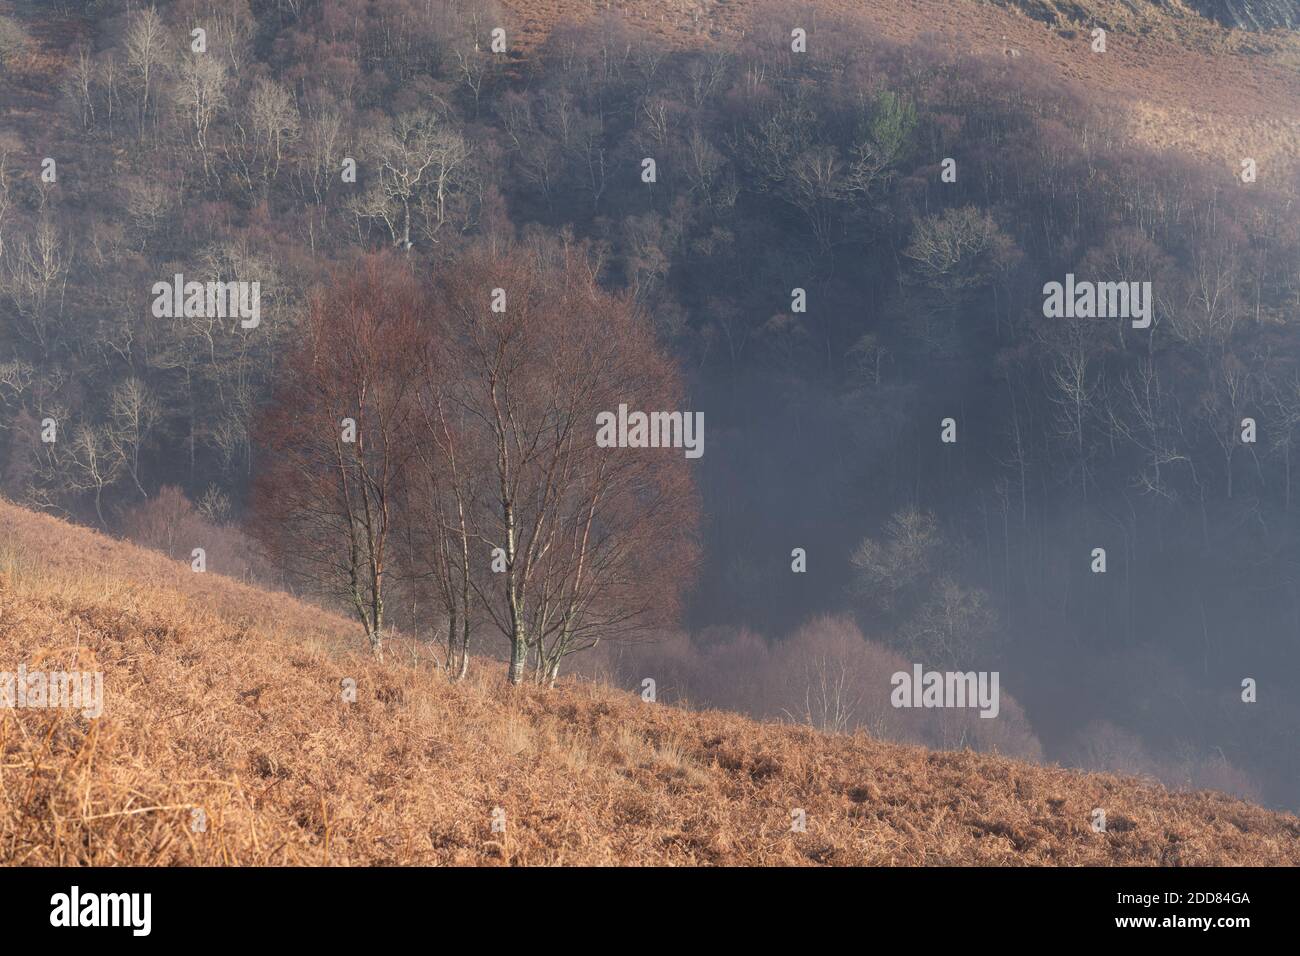 Misty paesaggio nelle montagne scozzesi a ben Lomond, Loch Lomond e il Trossachs National Park, Scozia, Regno Unito, Europa Foto Stock